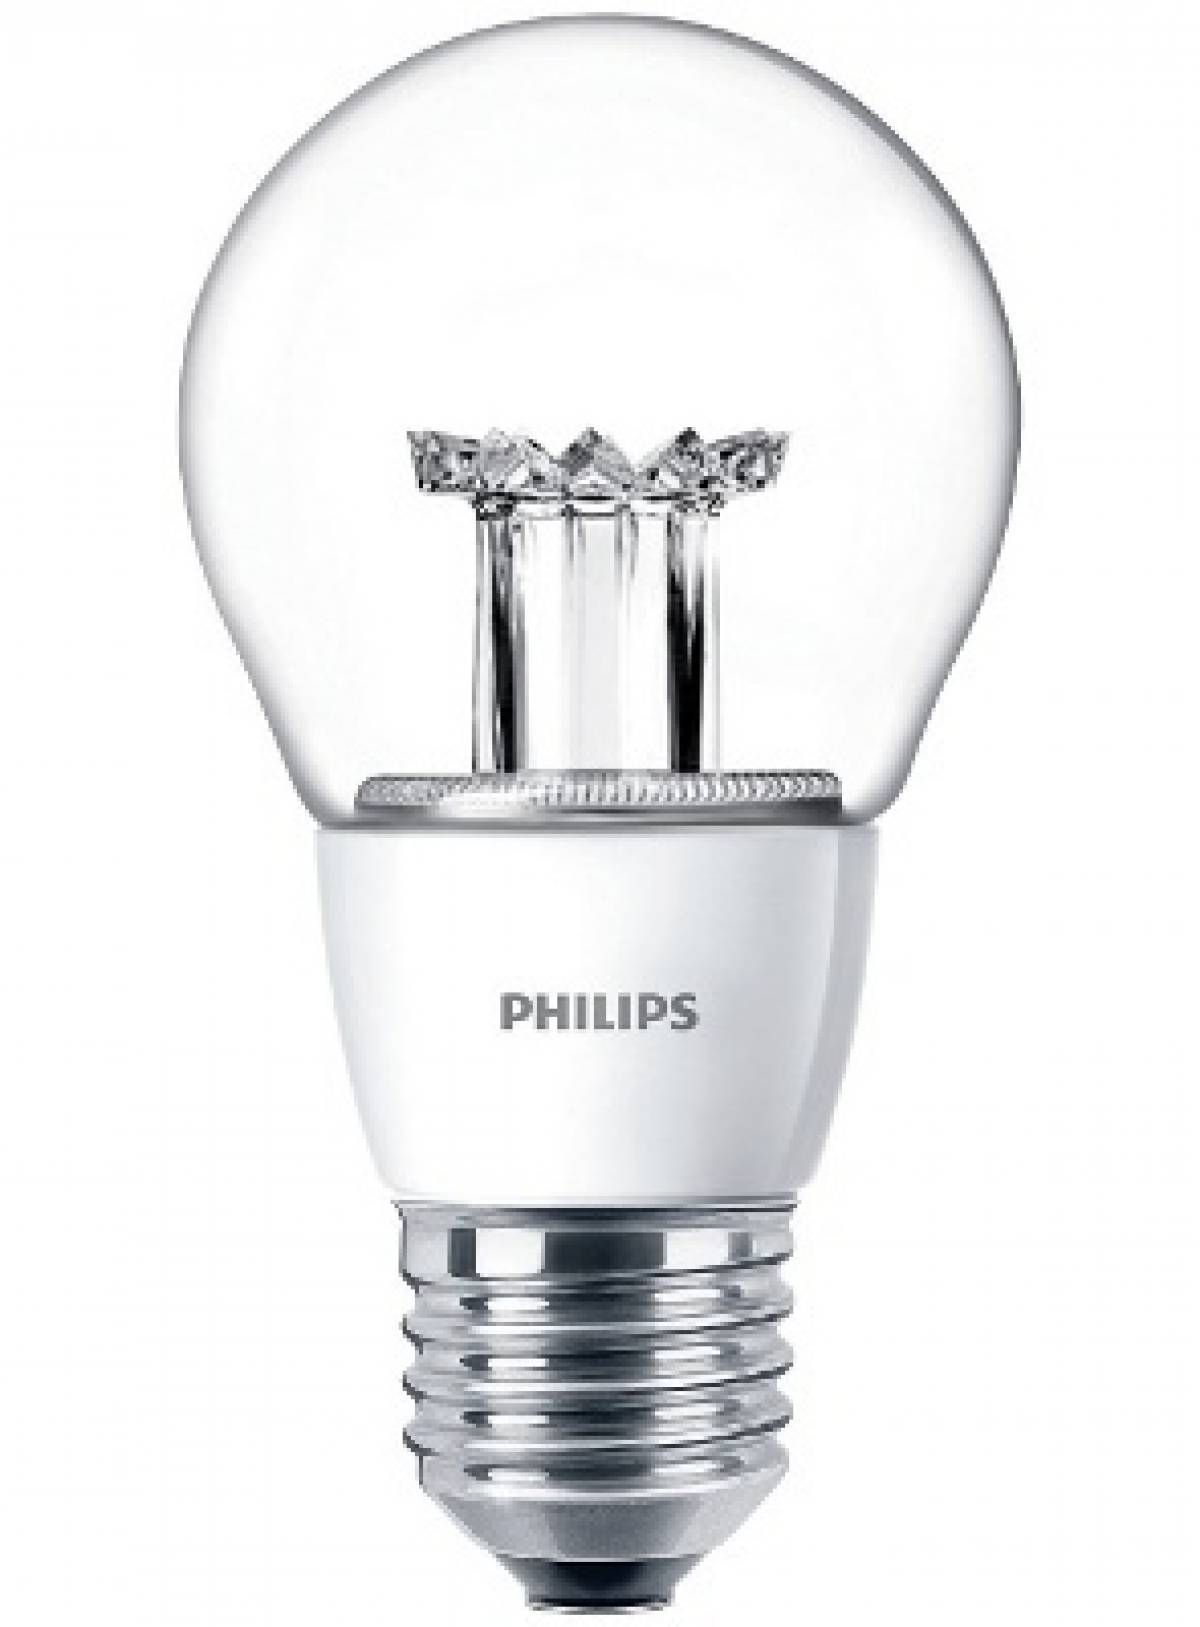 Őszi újdonság – Philips Master LED a hagyományos 40 wattos izzók kiváltására